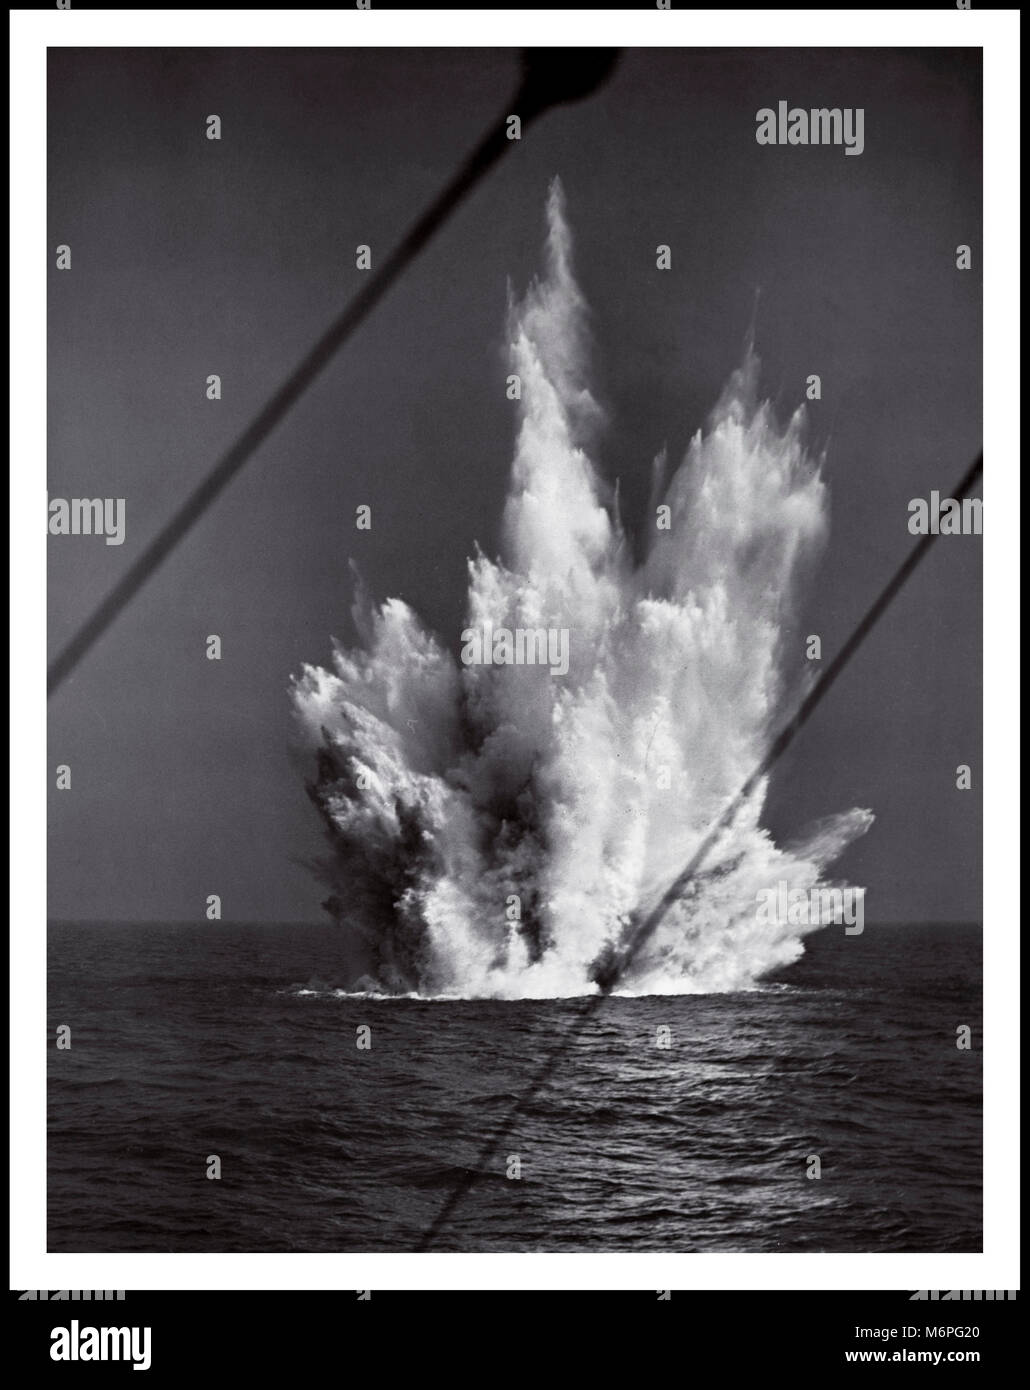 WW2 charge de profondeur explosant dans la chasse aux U-Boats allemands dans la bataille de l'Atlantique. Années 1940 les Allemands ont perdu 783 U-boats et 30,000 marins, tandis que les Italiens ont perdu 500 marins et 17 sous-marins. Le résultat de la bataille a été une victoire stratégique pour les alliés. Banque D'Images